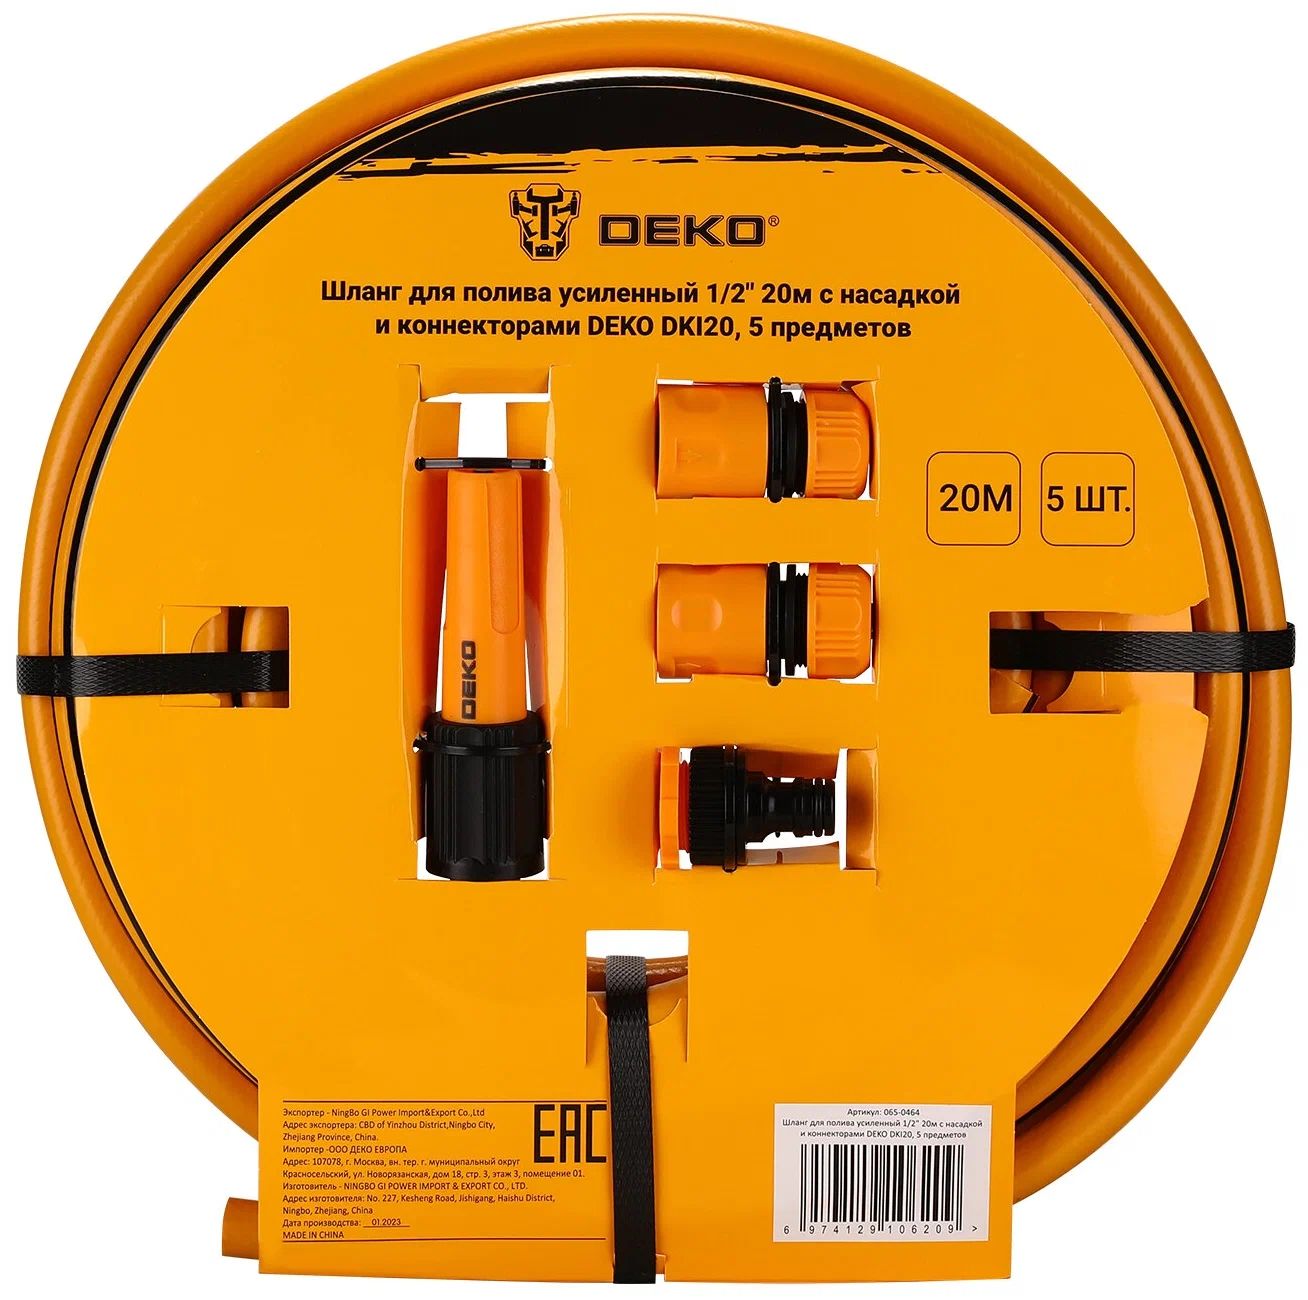 Шланг для полива усиленный 1/2 20м с насадкой и коннекторами DEKO DKI20, 5 предметов